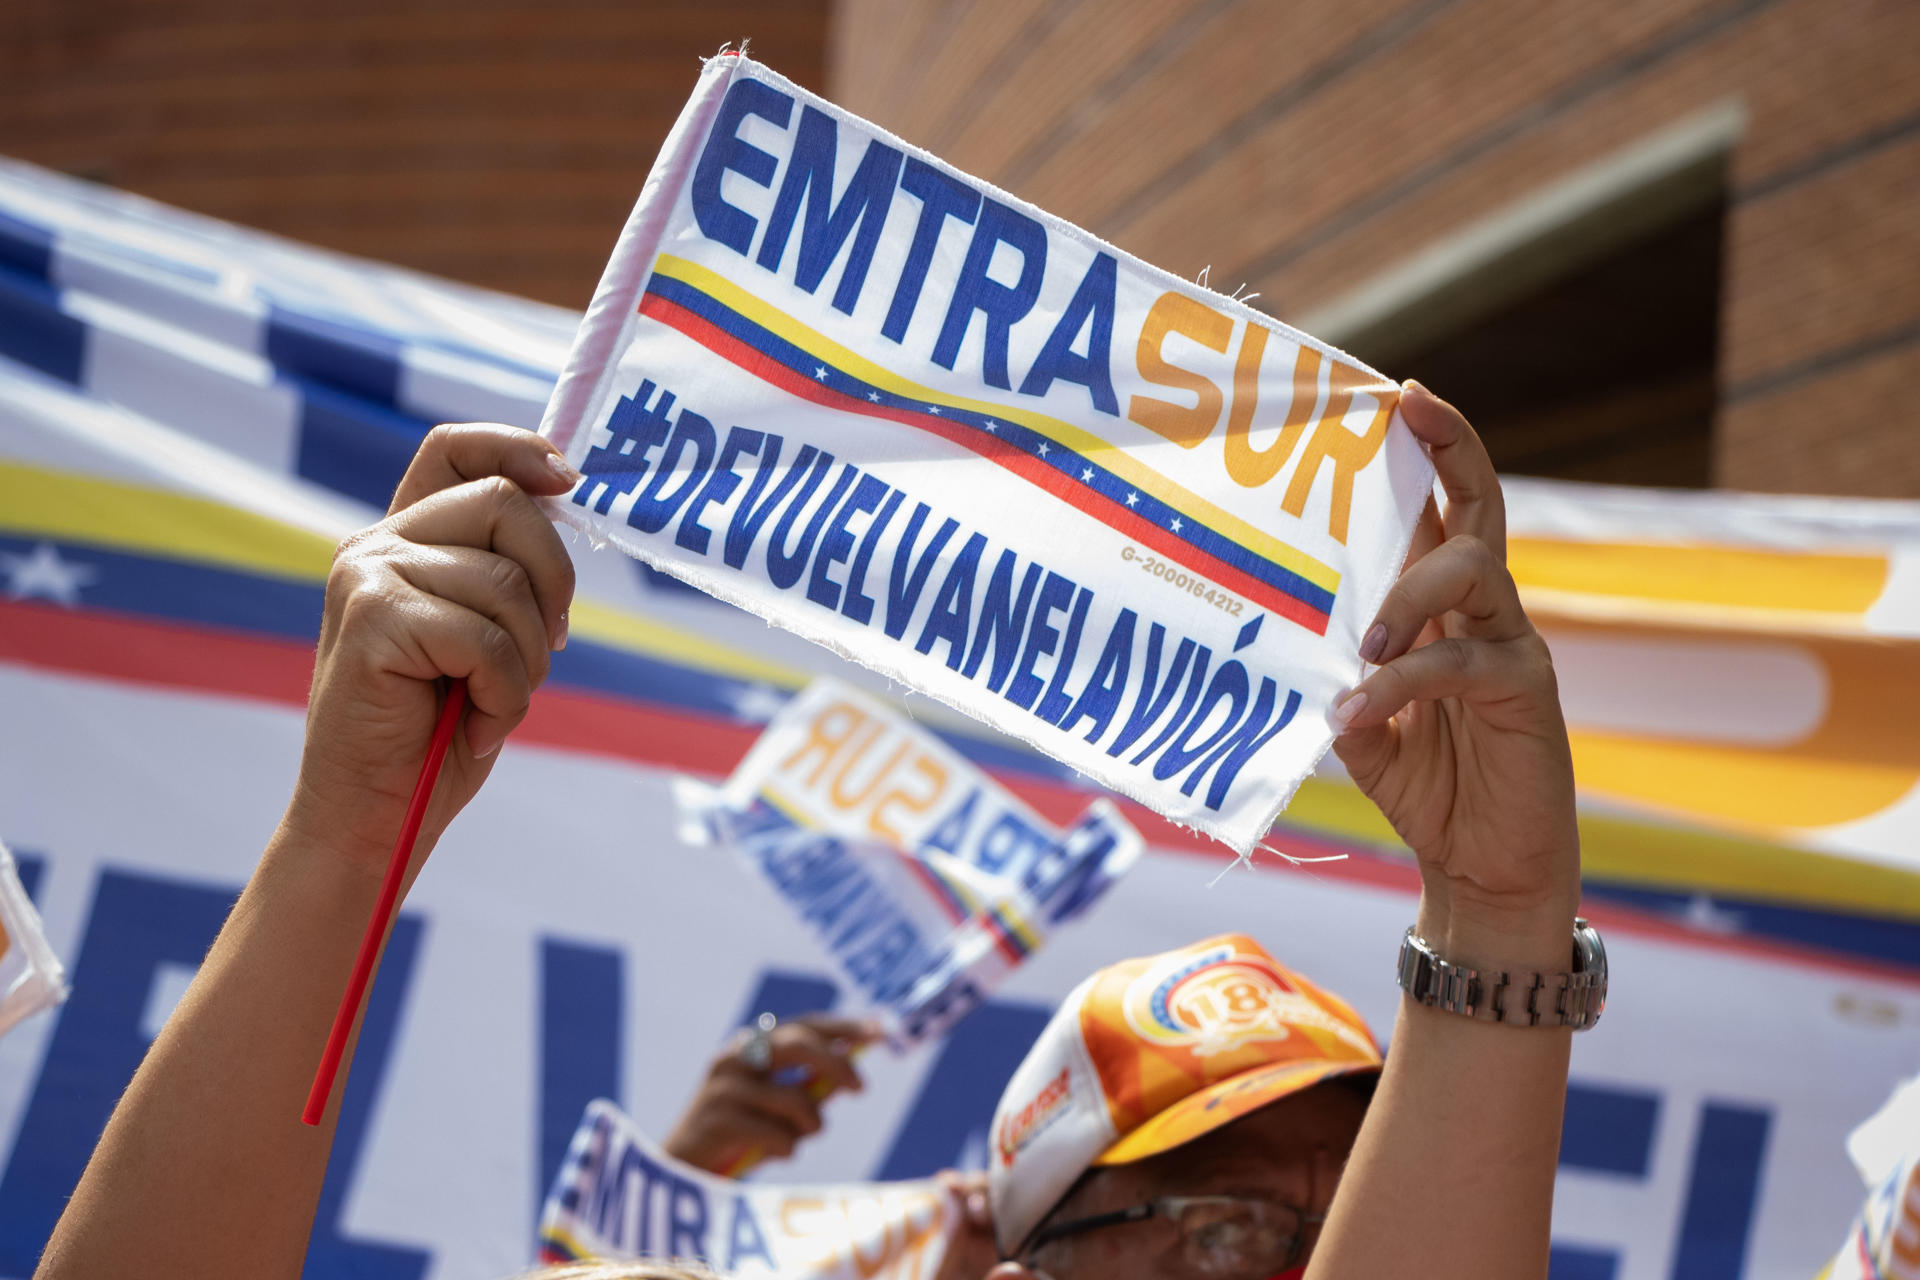 Protesta venezolana por decisión de enviar avión a Estados Unidos.